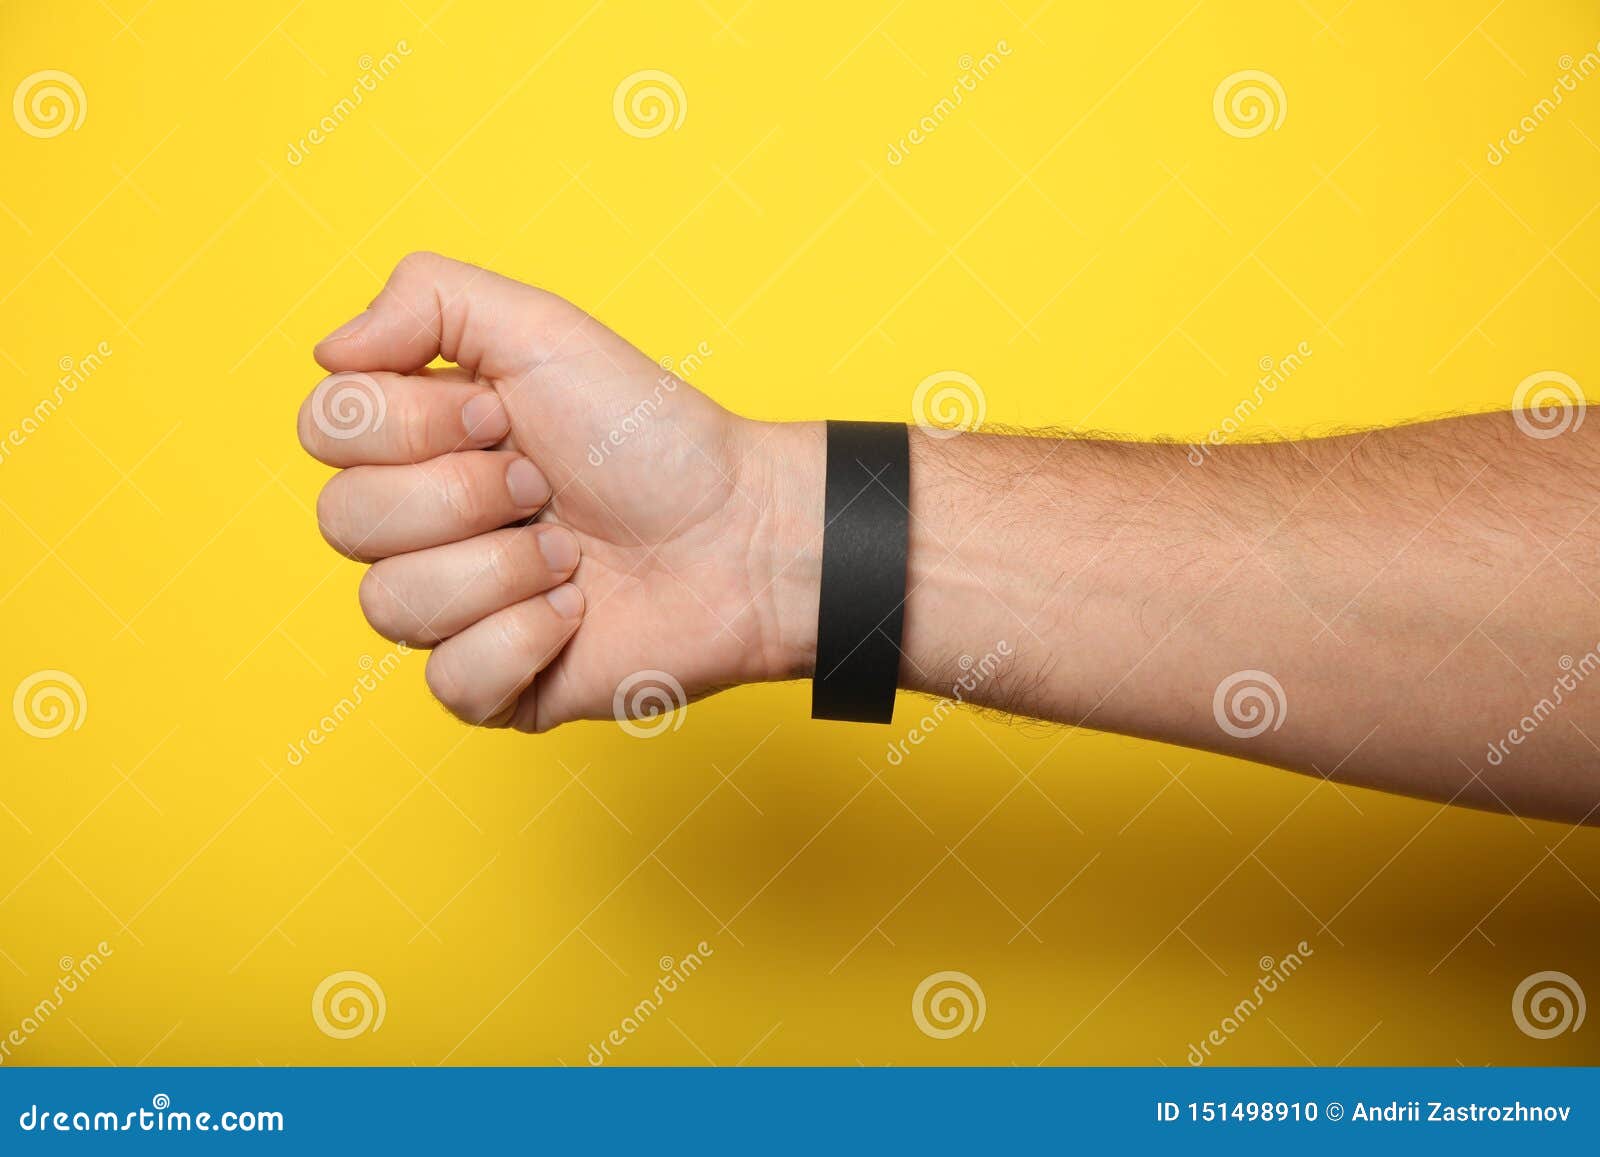 Download Black Paper Wristband Mockup, Event Bracelet On Hand ...